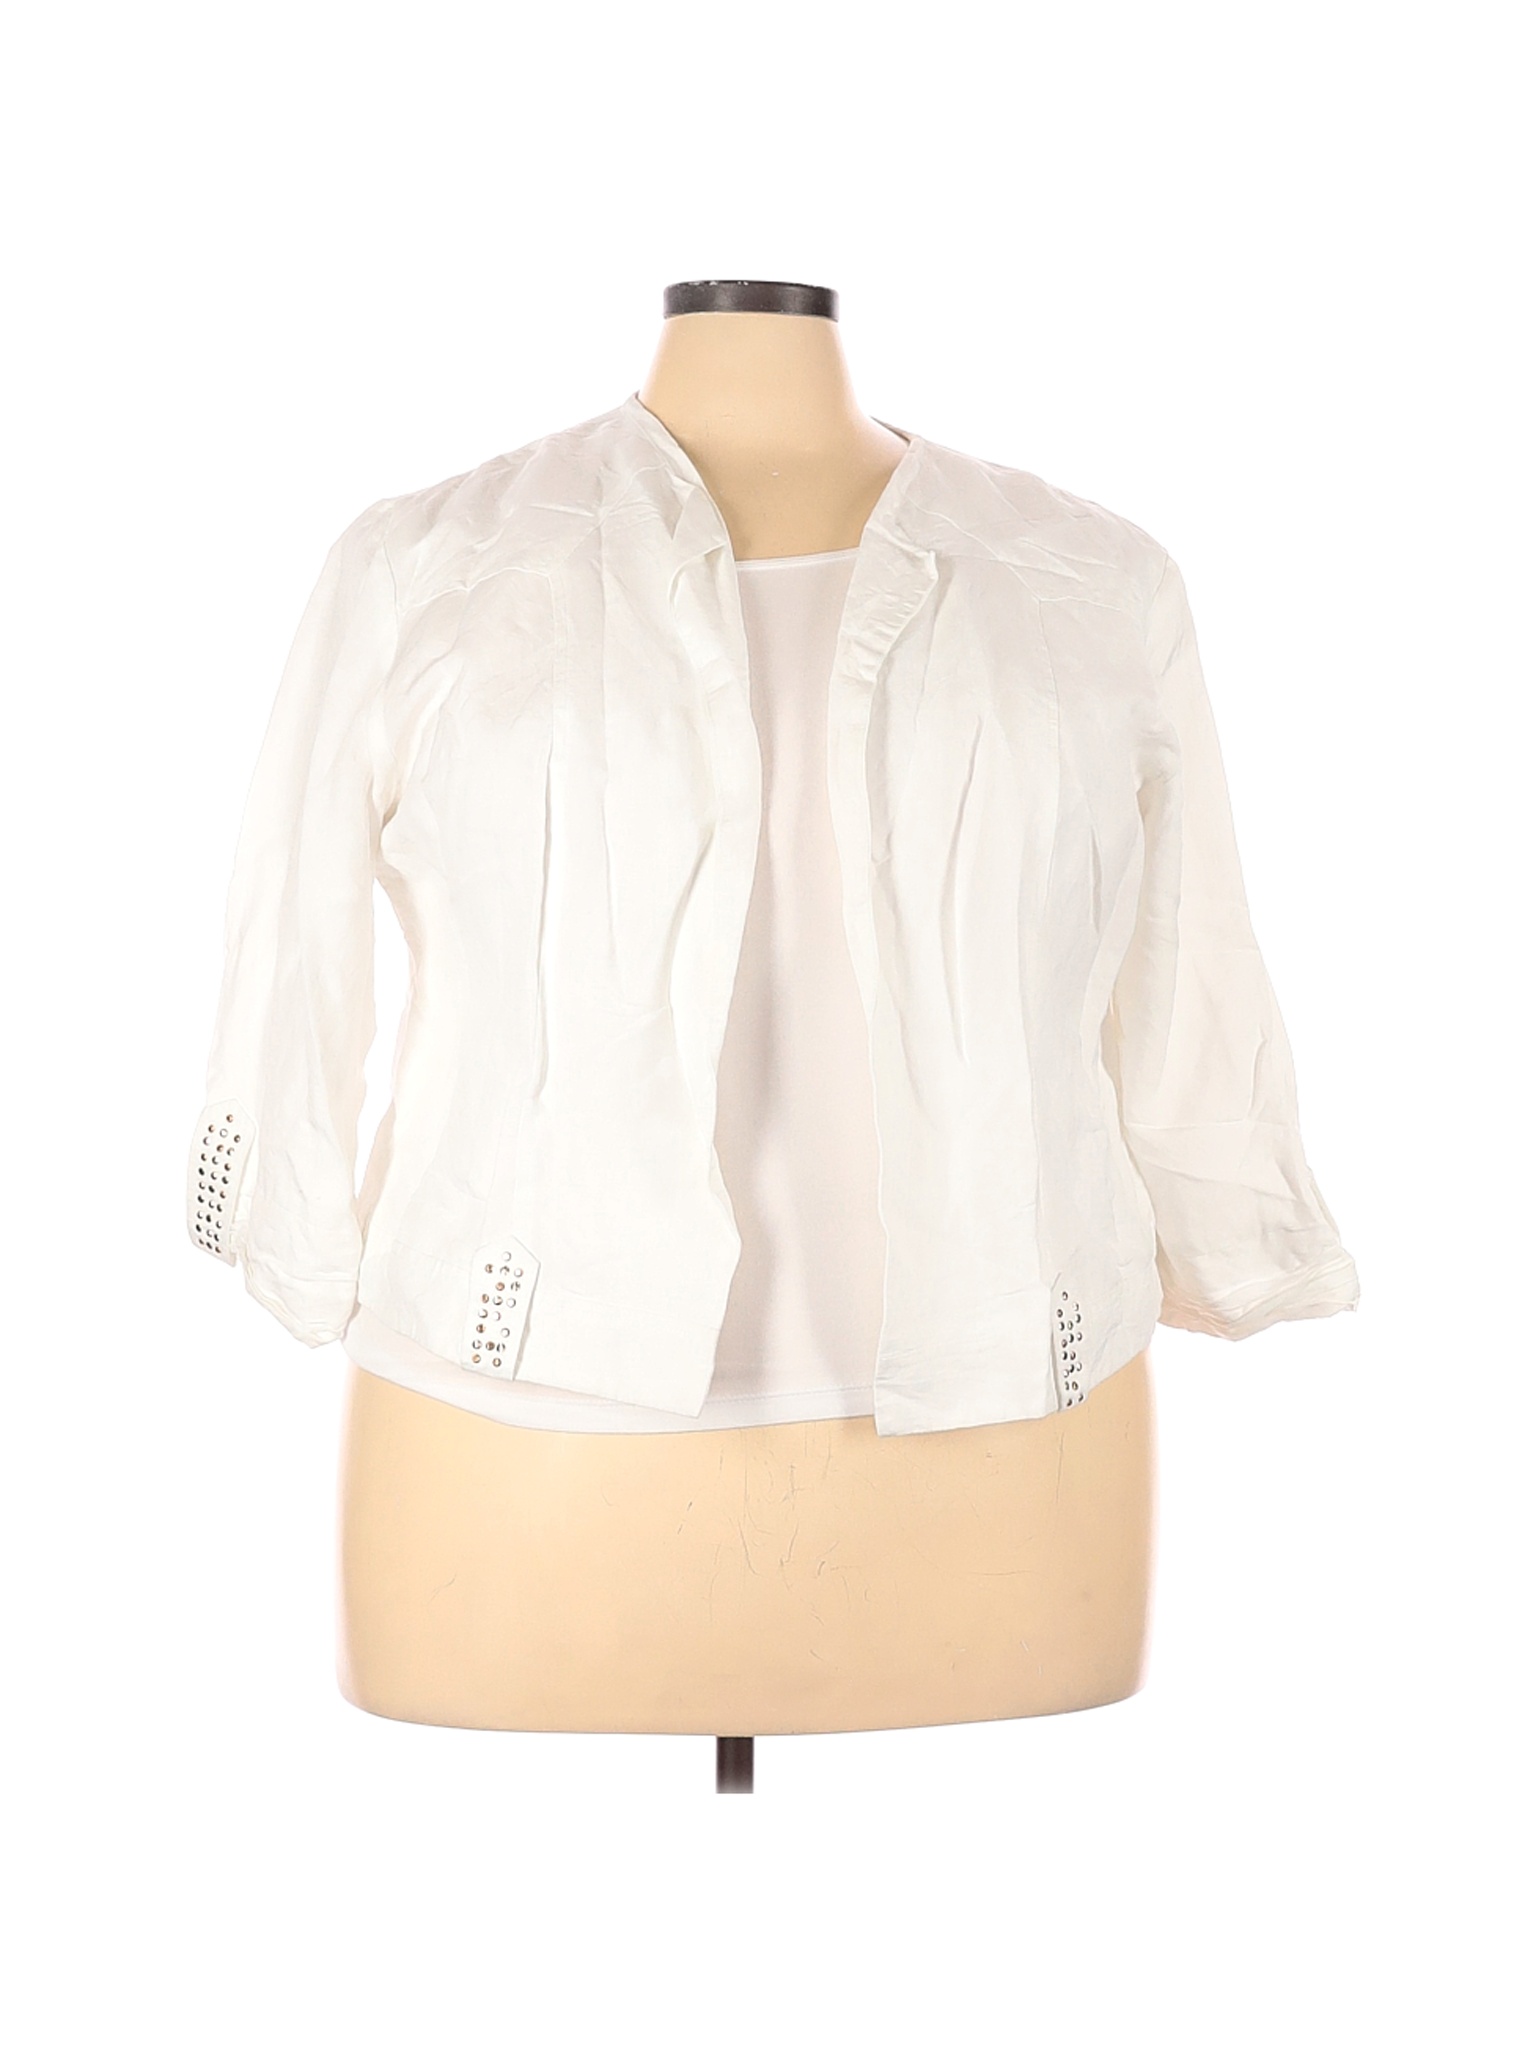 Ashley Stewart Women White Jacket 22 Plus | eBay